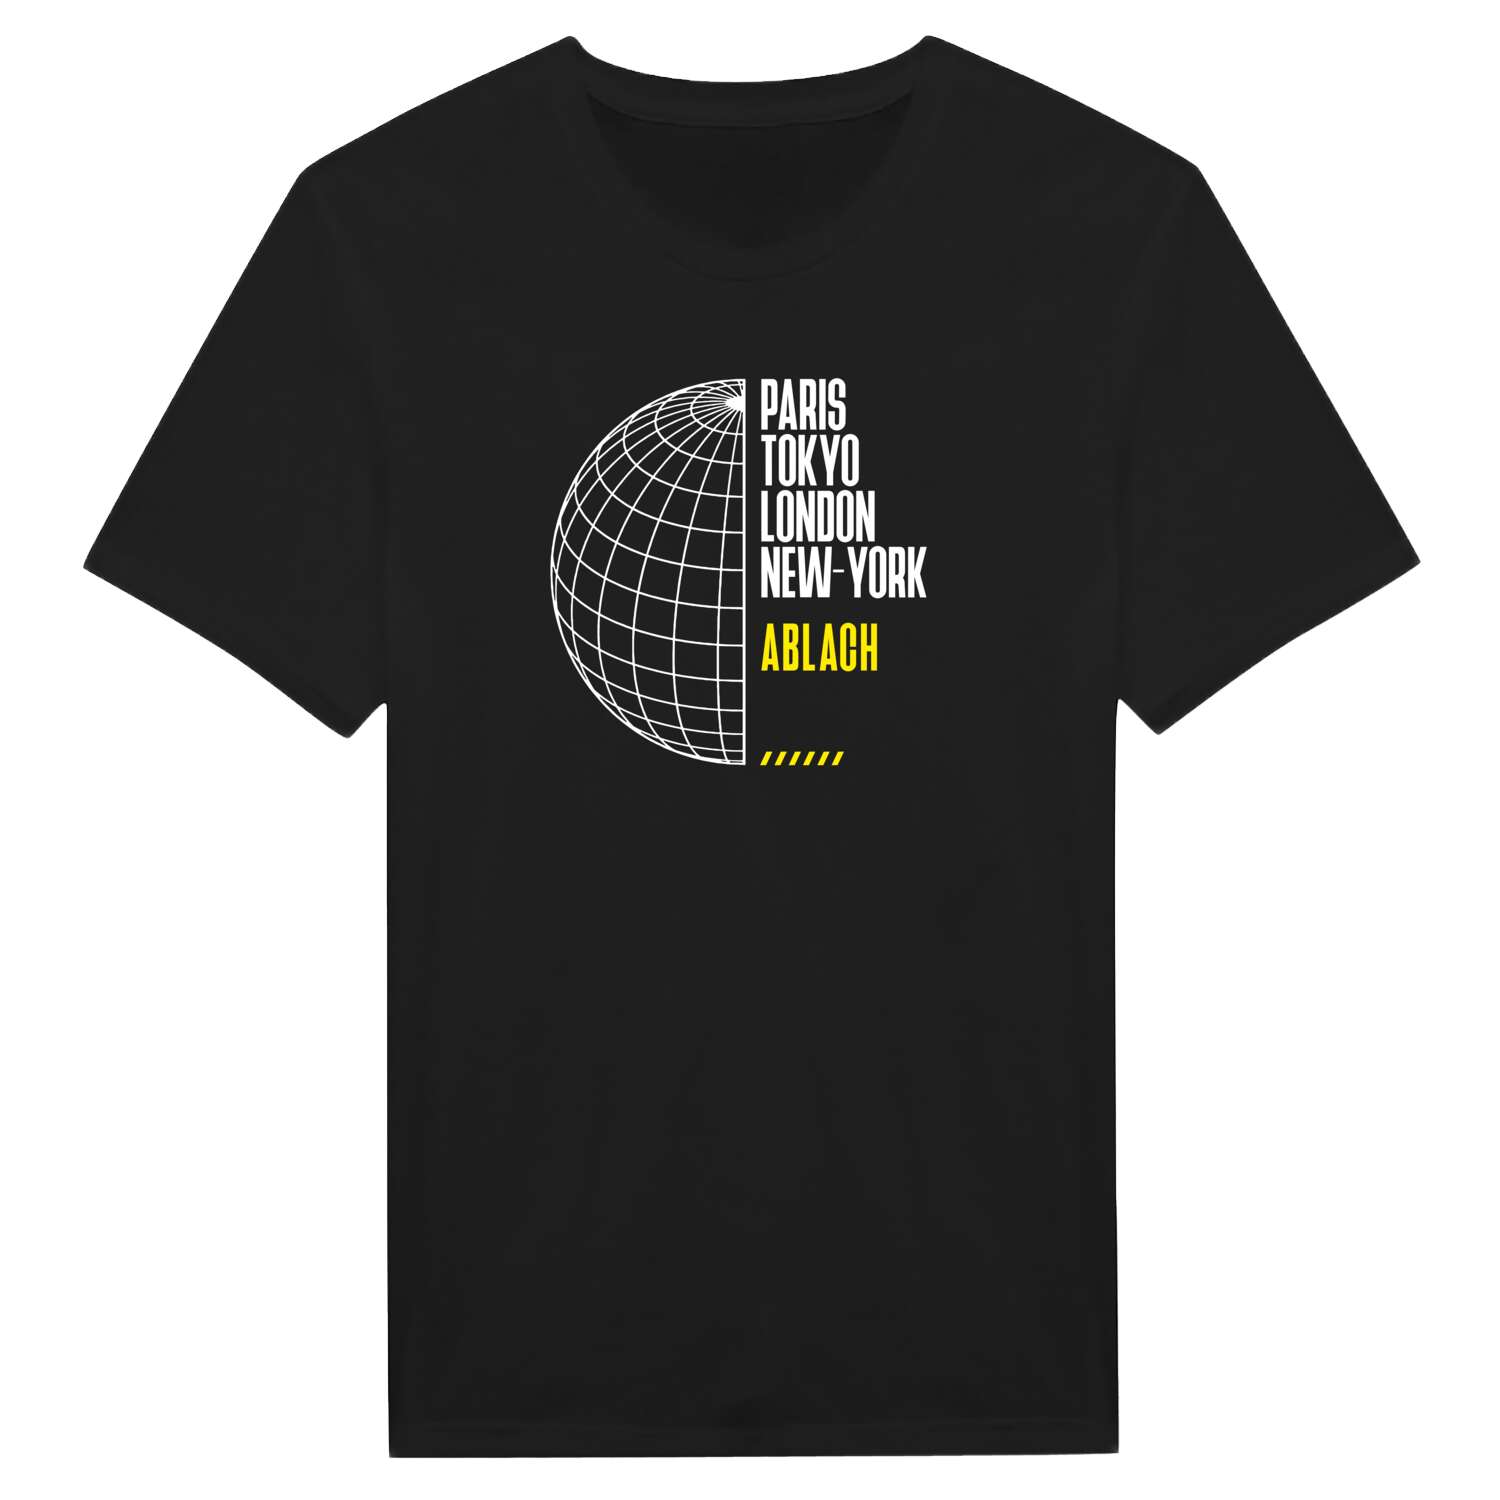 Ablach T-Shirt »Paris Tokyo London«